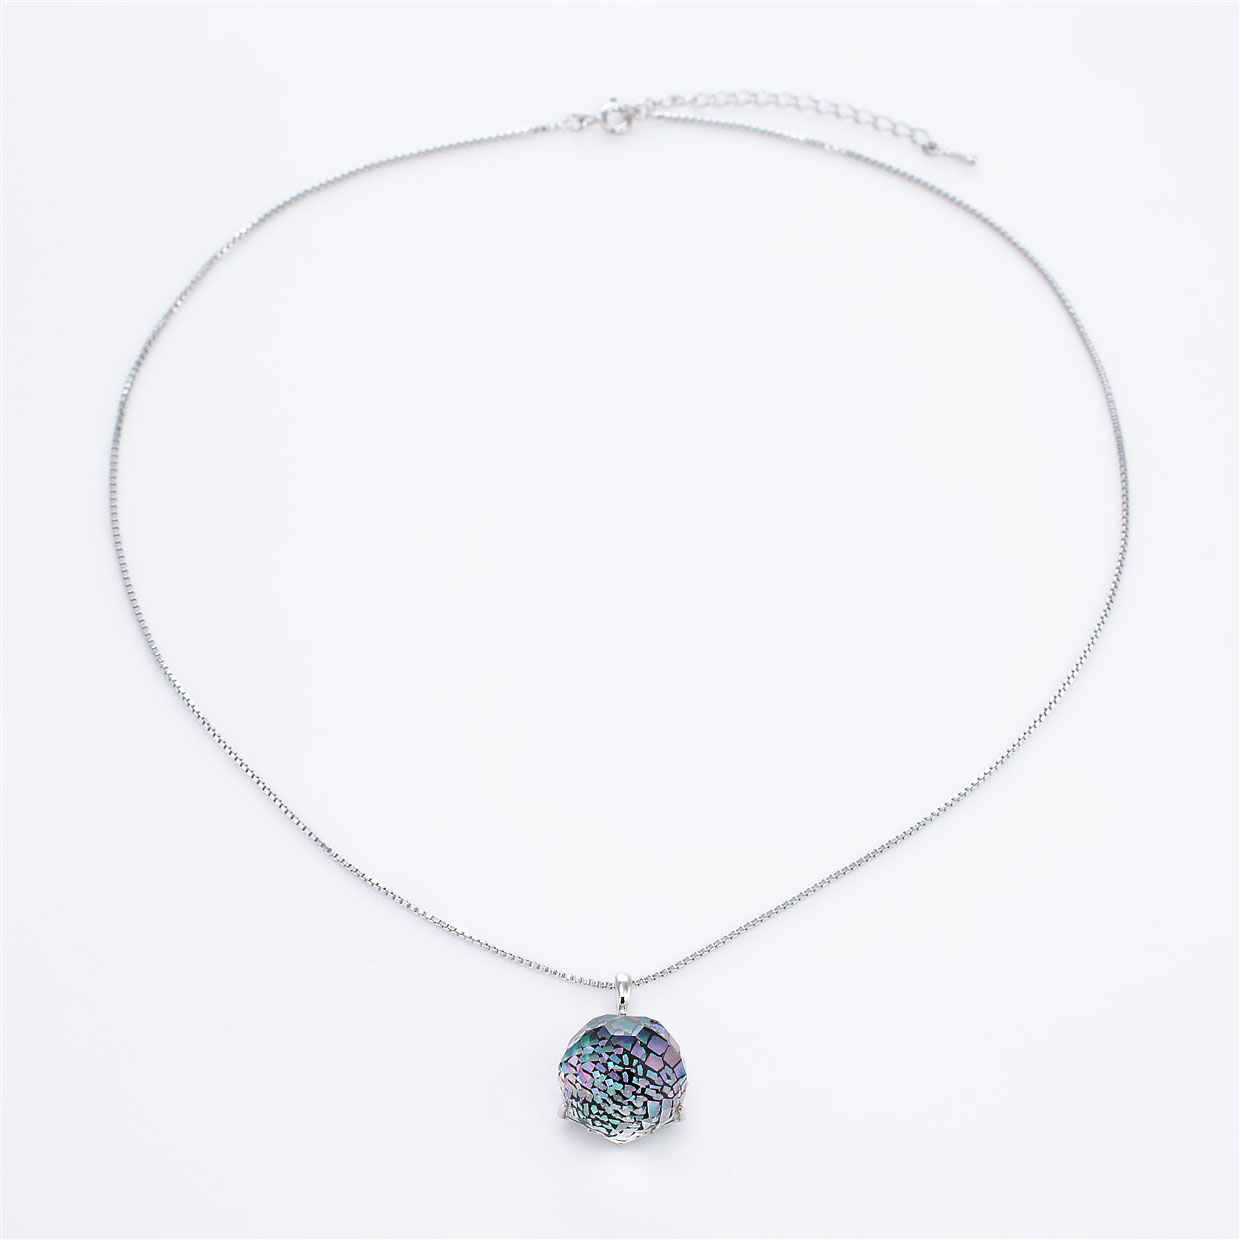 宝石クォーツ・水晶を使った和風のデザインが特徴的な和の彩ネックレス/ペンダントの商品写真です。型番：CR201014-01 画像その1